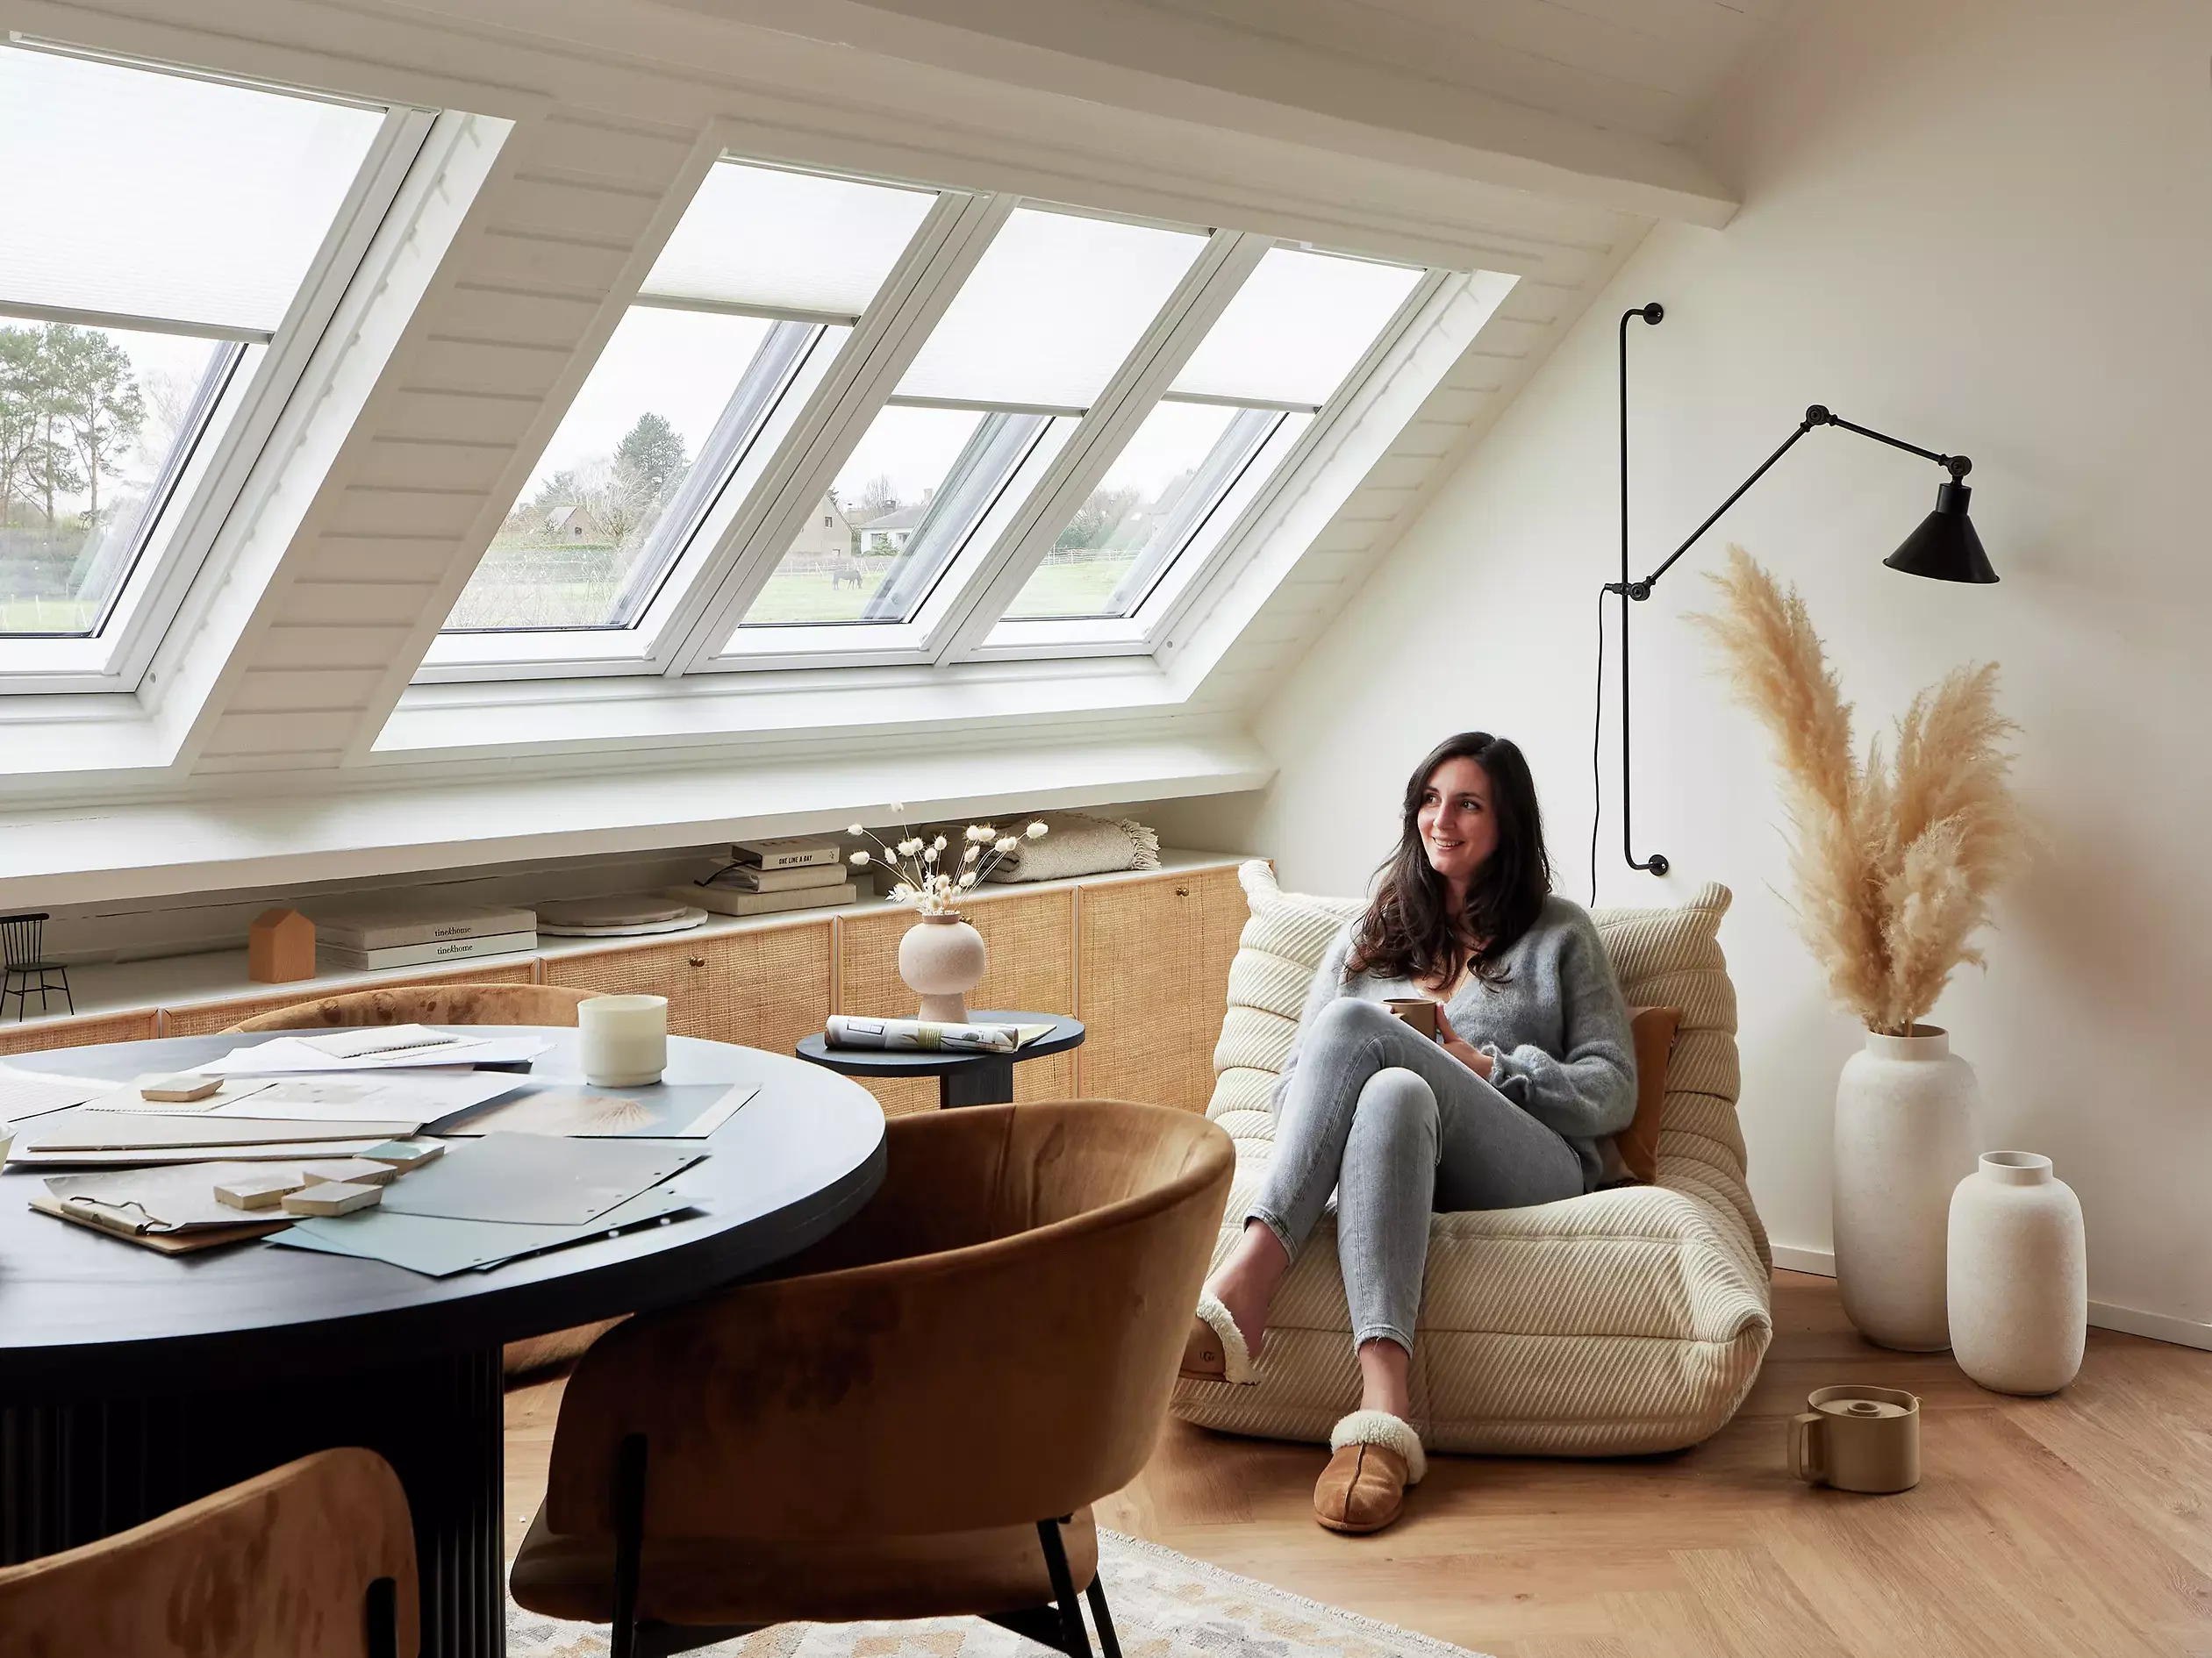 Espace de lecture serein dans le comble avec lumière naturelle provenant des fenêtres de toit VELUX, fauteuil confortable et décoration.